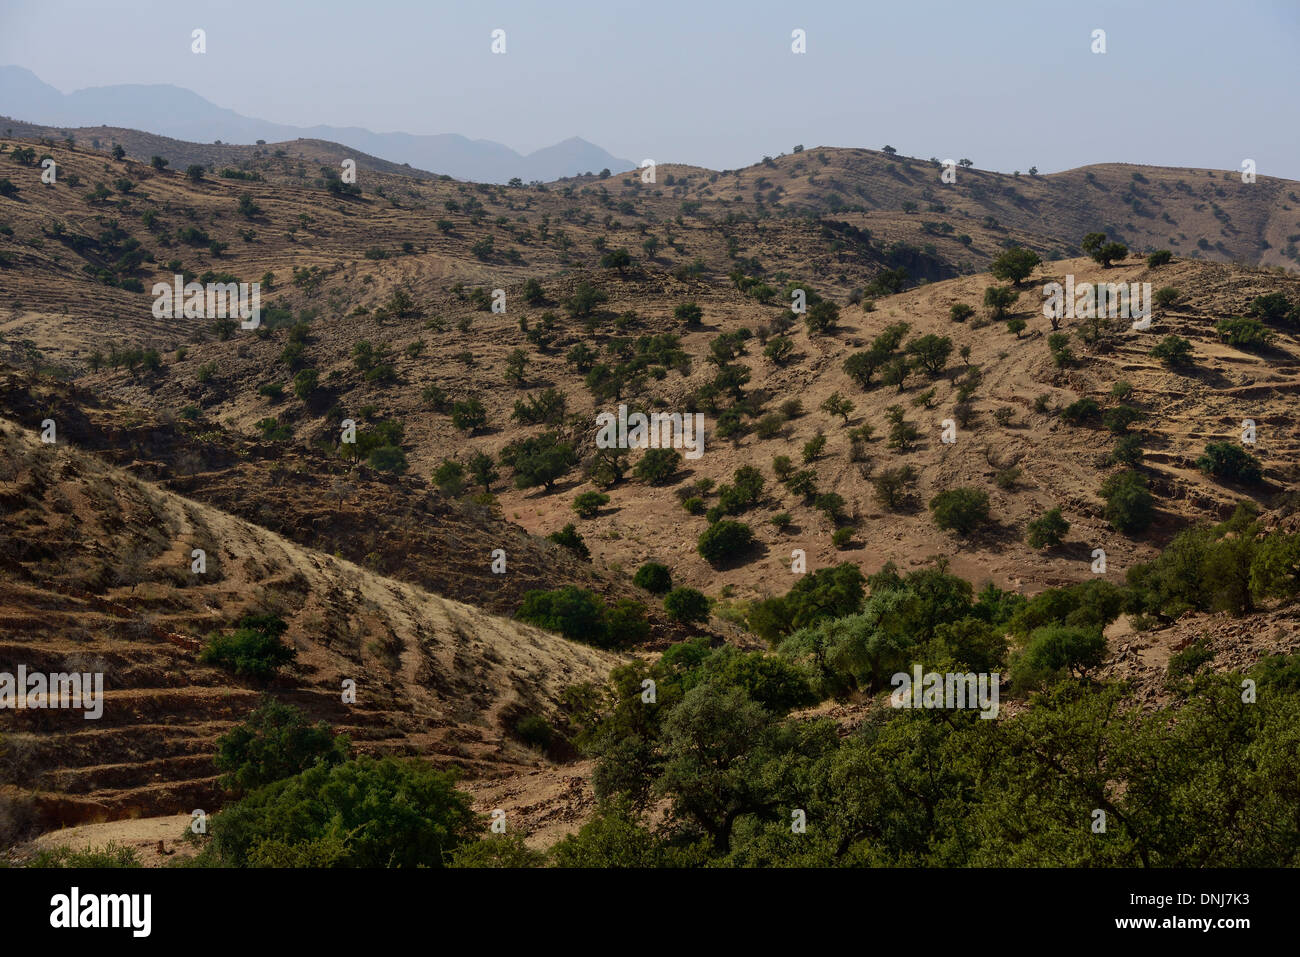 Il Marocco, Anti-Atlas, arido paesaggio con la piantagione argan Foto Stock